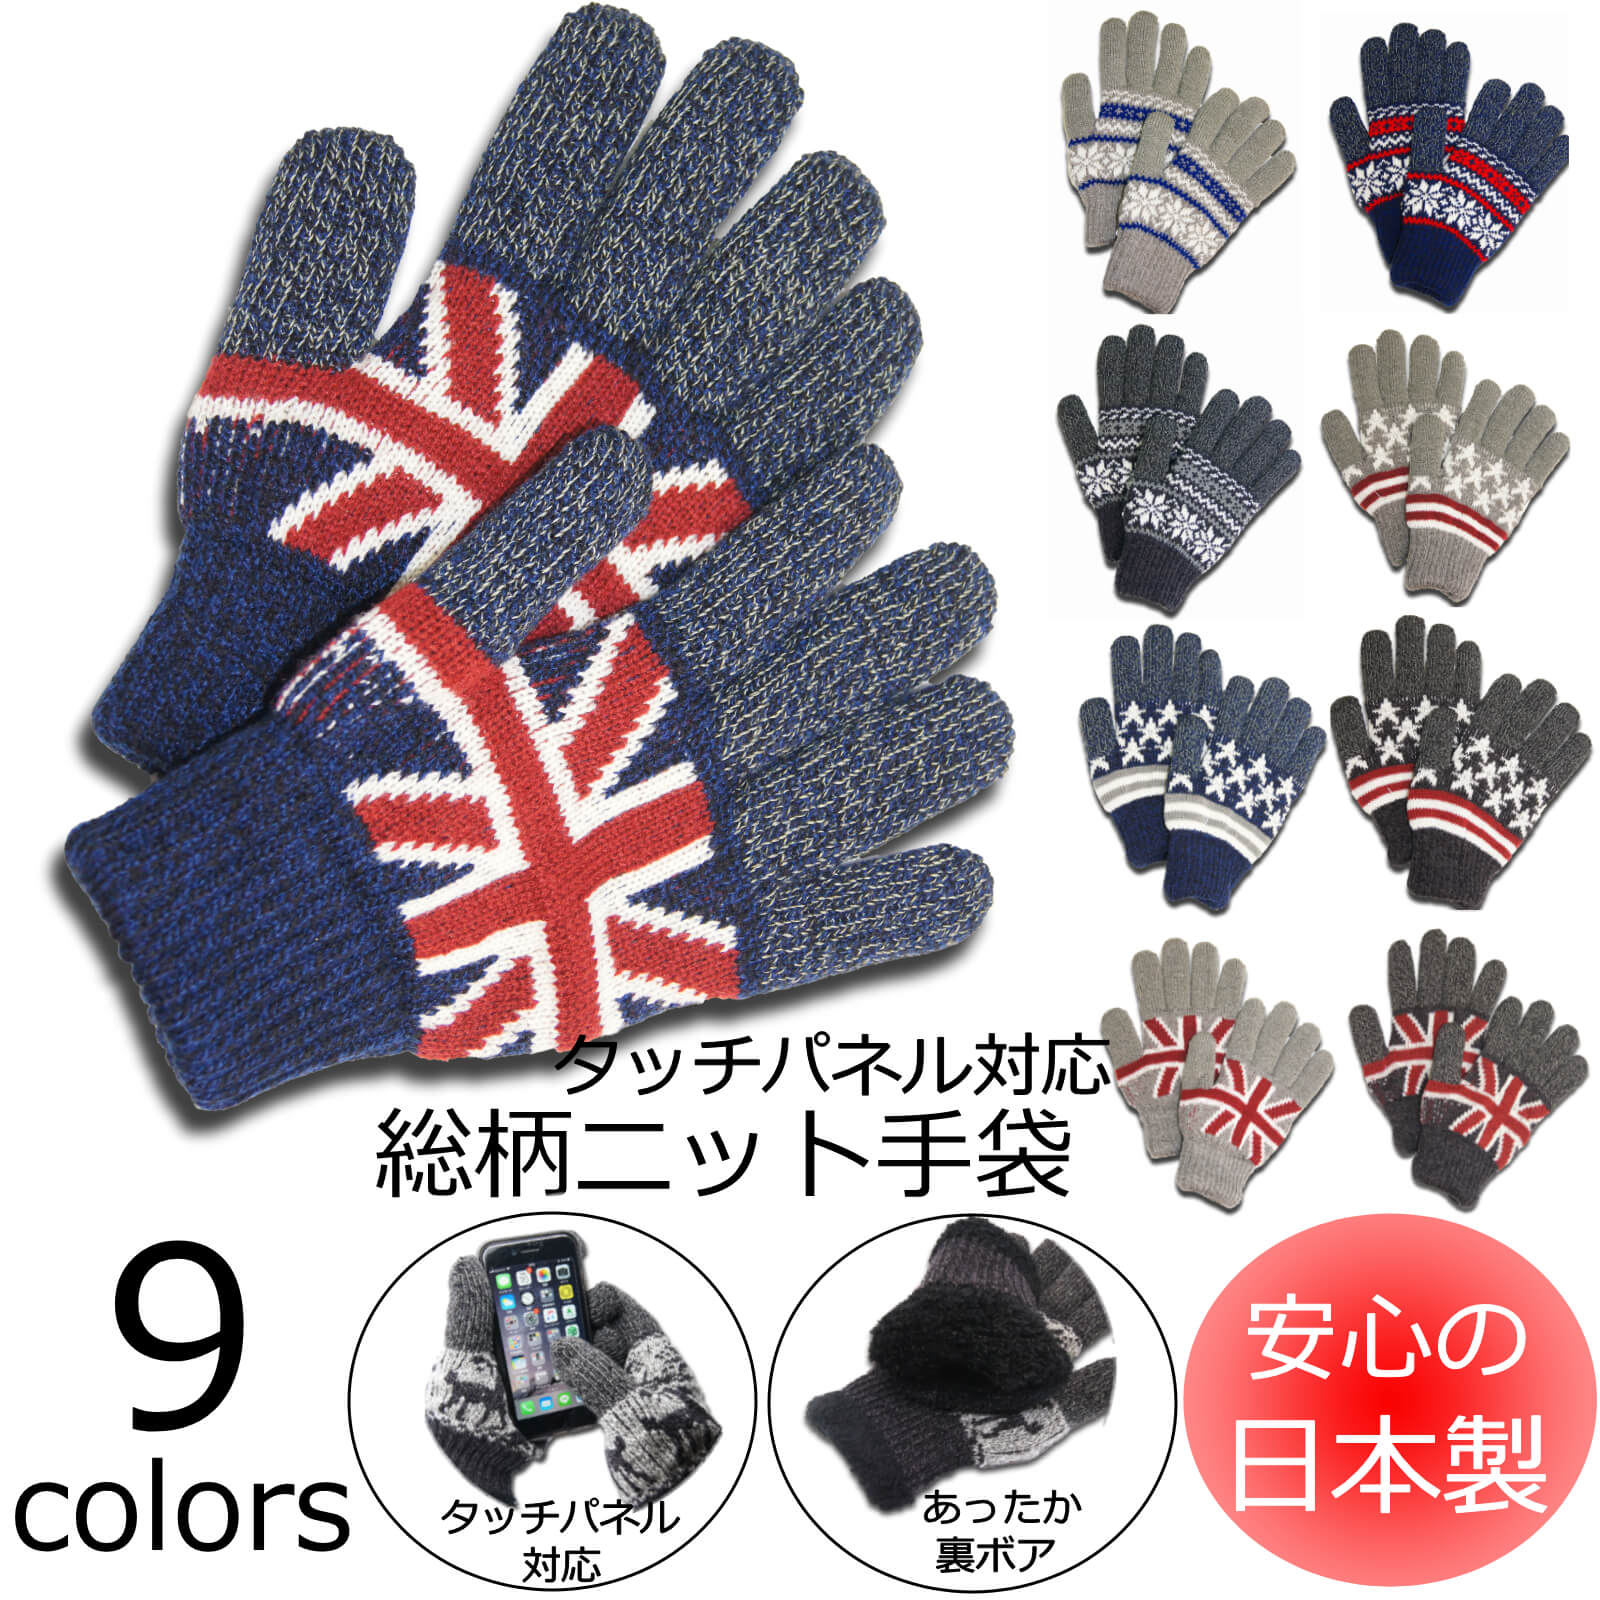 【日本製】ニット手袋 タッチパネル対応！(全6色)2815 雪柄 星柄 イギリス メンズ レディース あったか